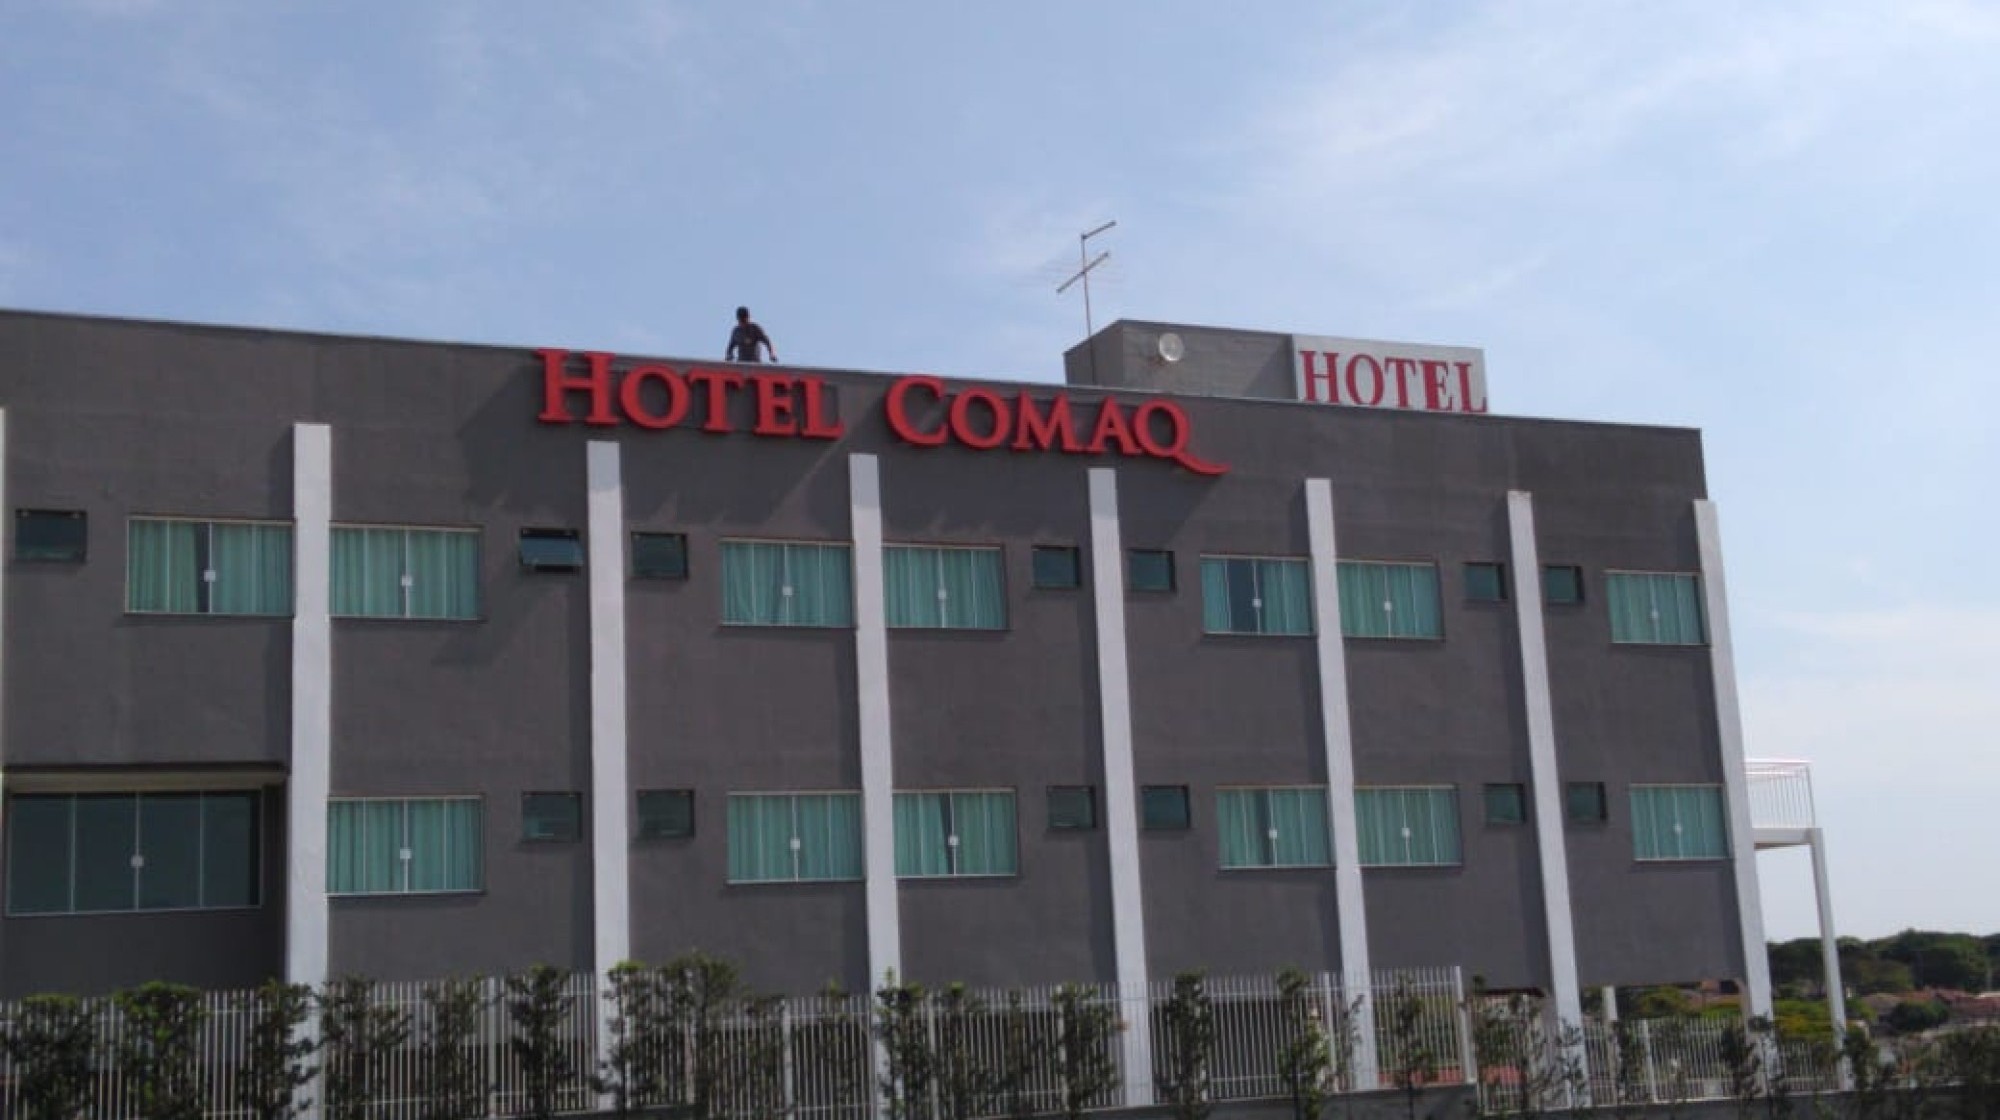 Hotel Comaq